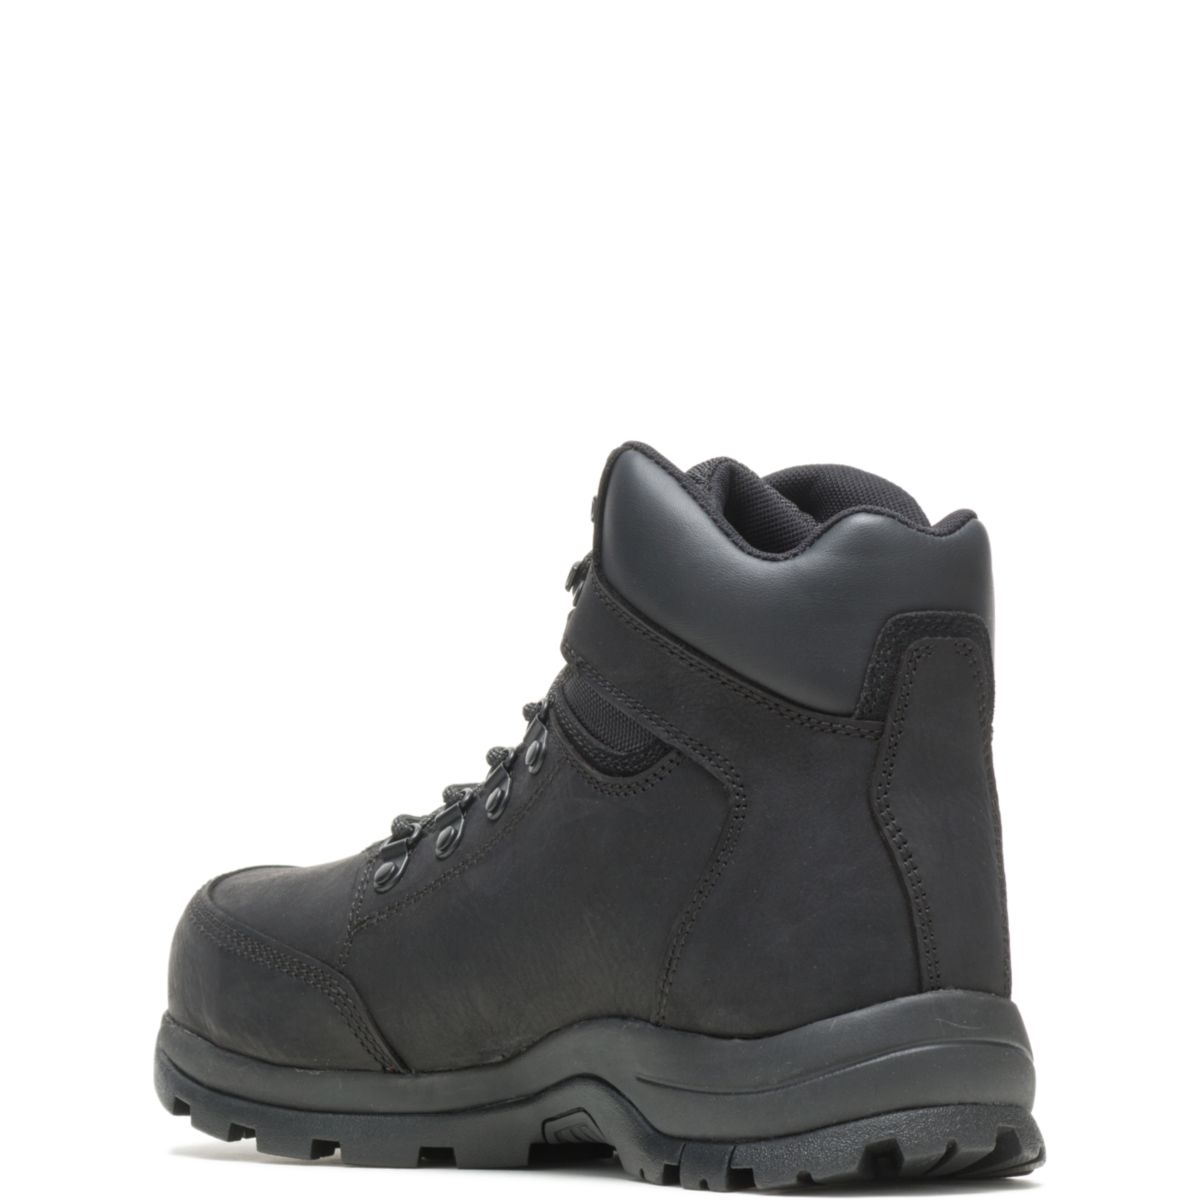 WOLVERINE Men's Grayson Steel Toe Waterproof Work Boot Black - W211042 BLACK - BLACK, 12 X-Wide